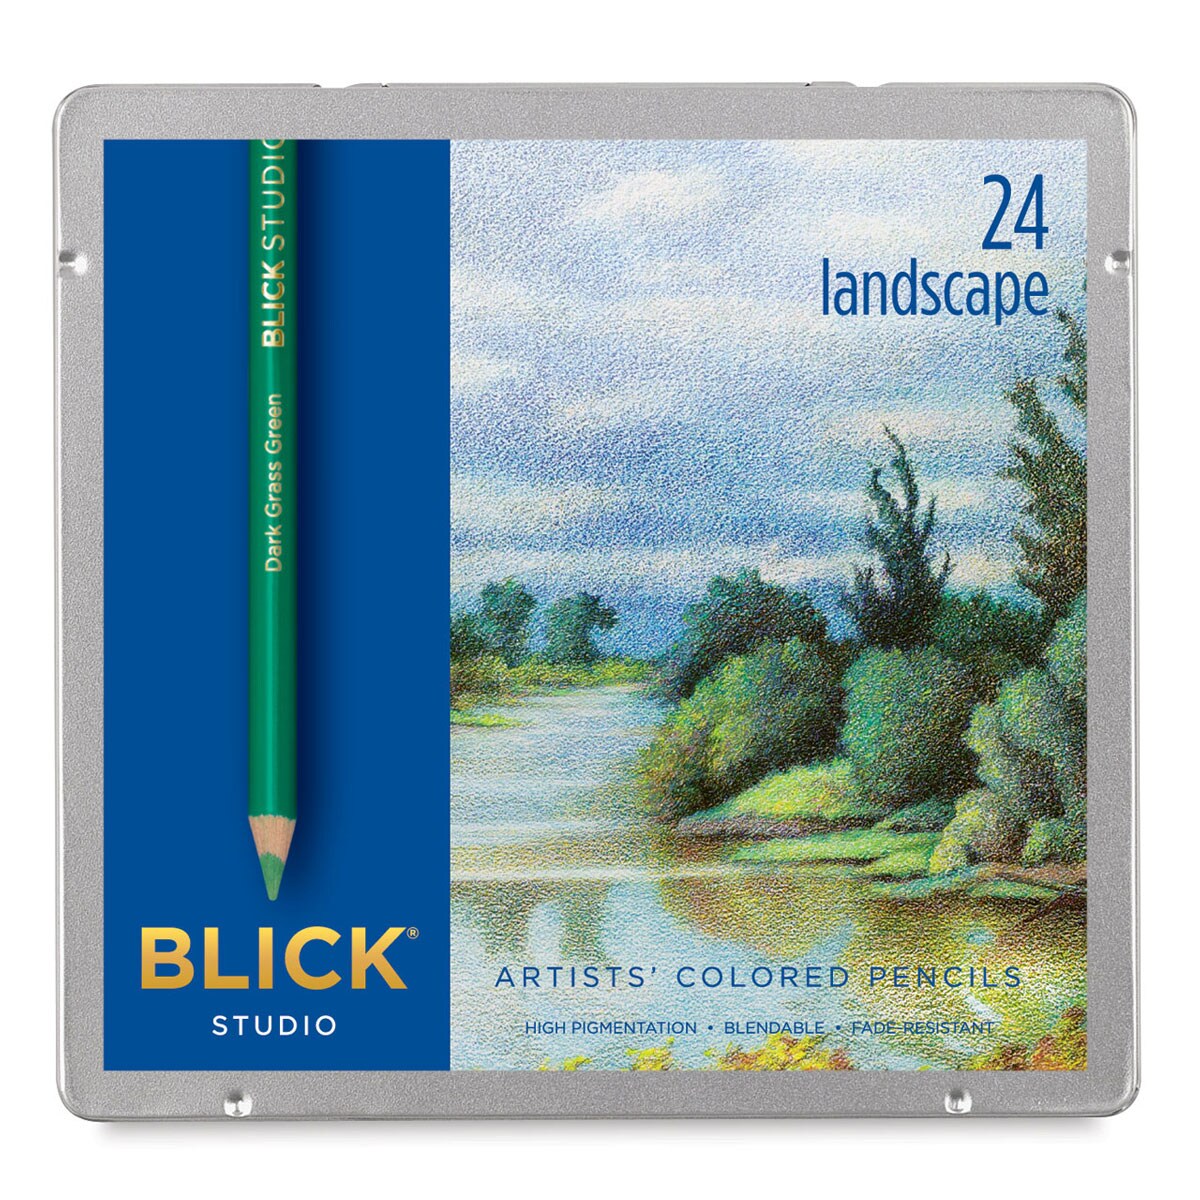 Blick Studio Artists' Colored Pencil Set - Set of 24, Landscape Colors ...